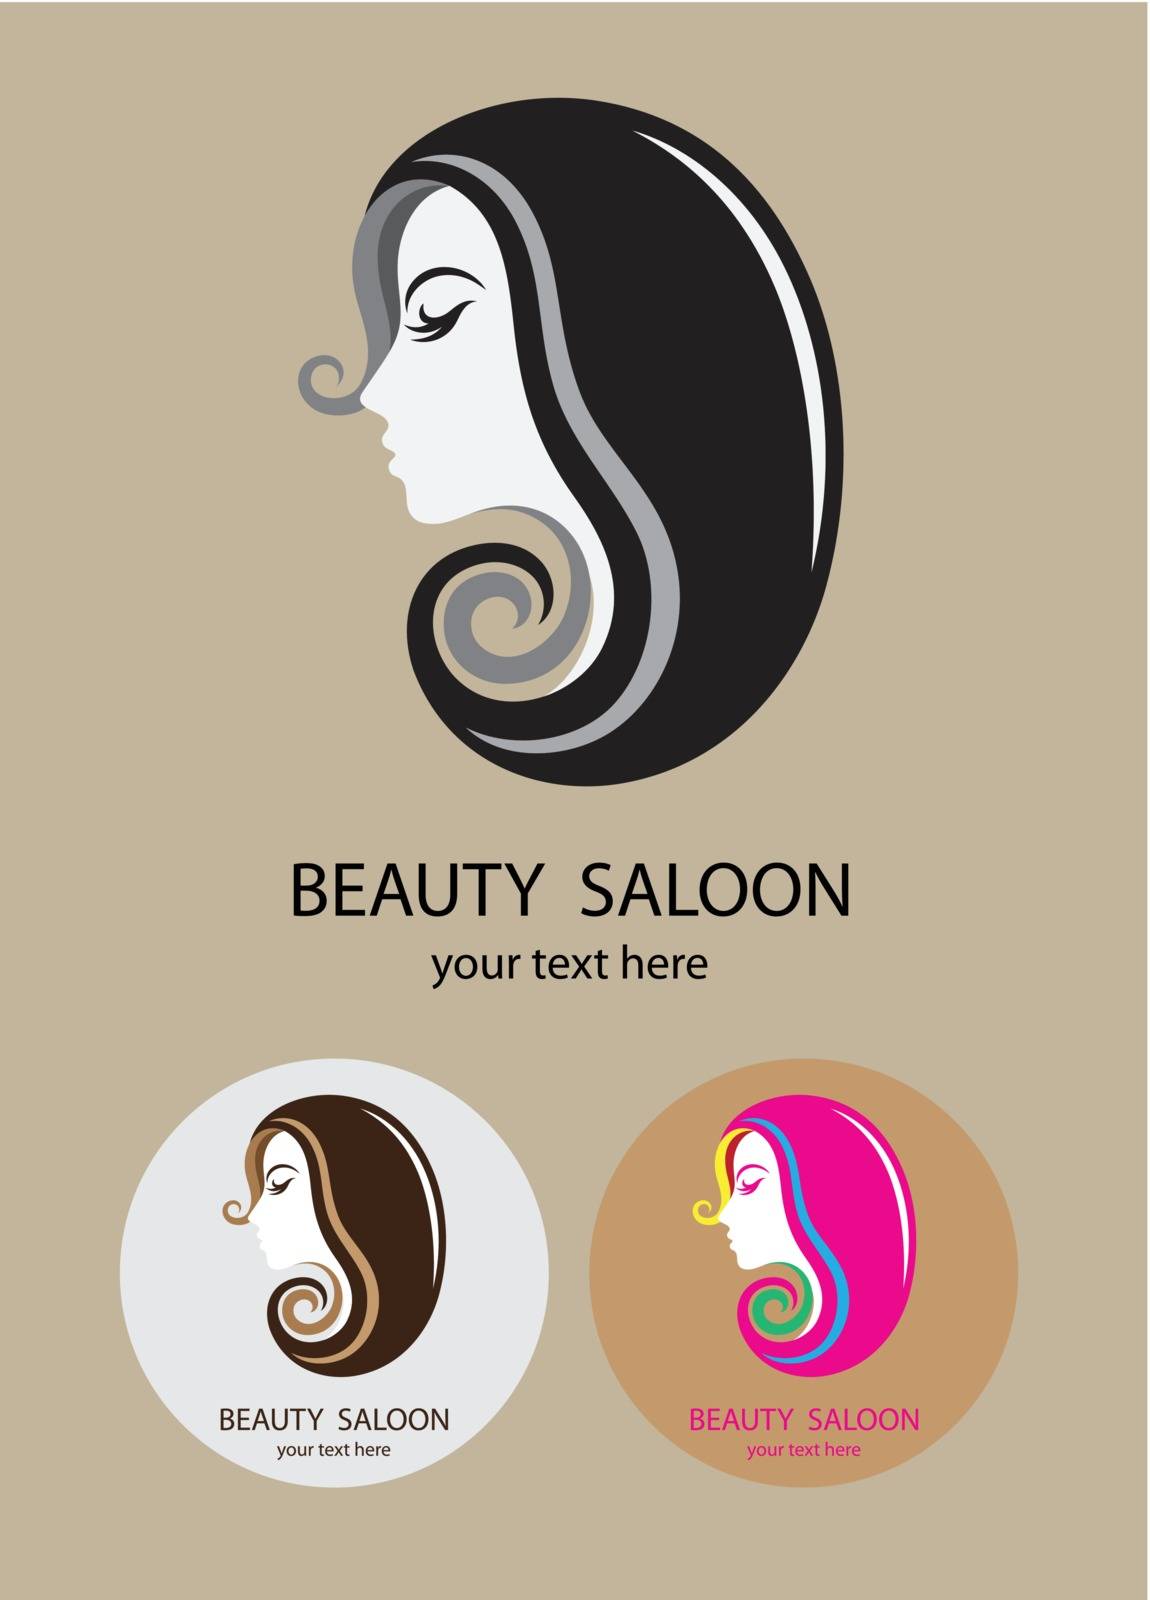 Beauty saloon logo by martinussumbaji